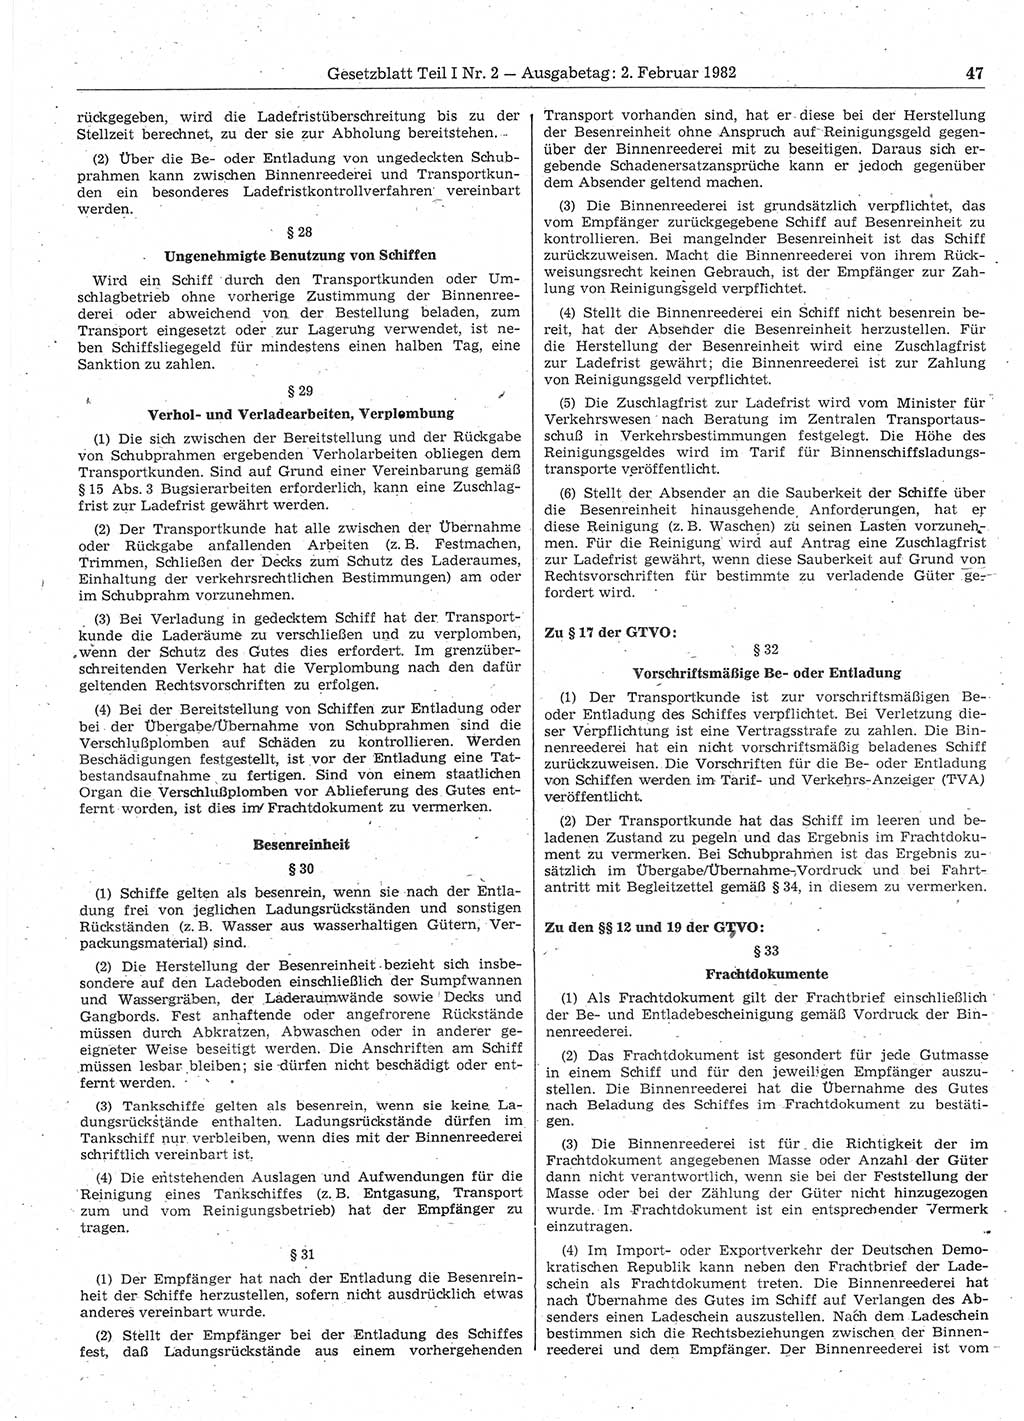 Gesetzblatt (GBl.) der Deutschen Demokratischen Republik (DDR) Teil Ⅰ 1982, Seite 47 (GBl. DDR Ⅰ 1982, S. 47)